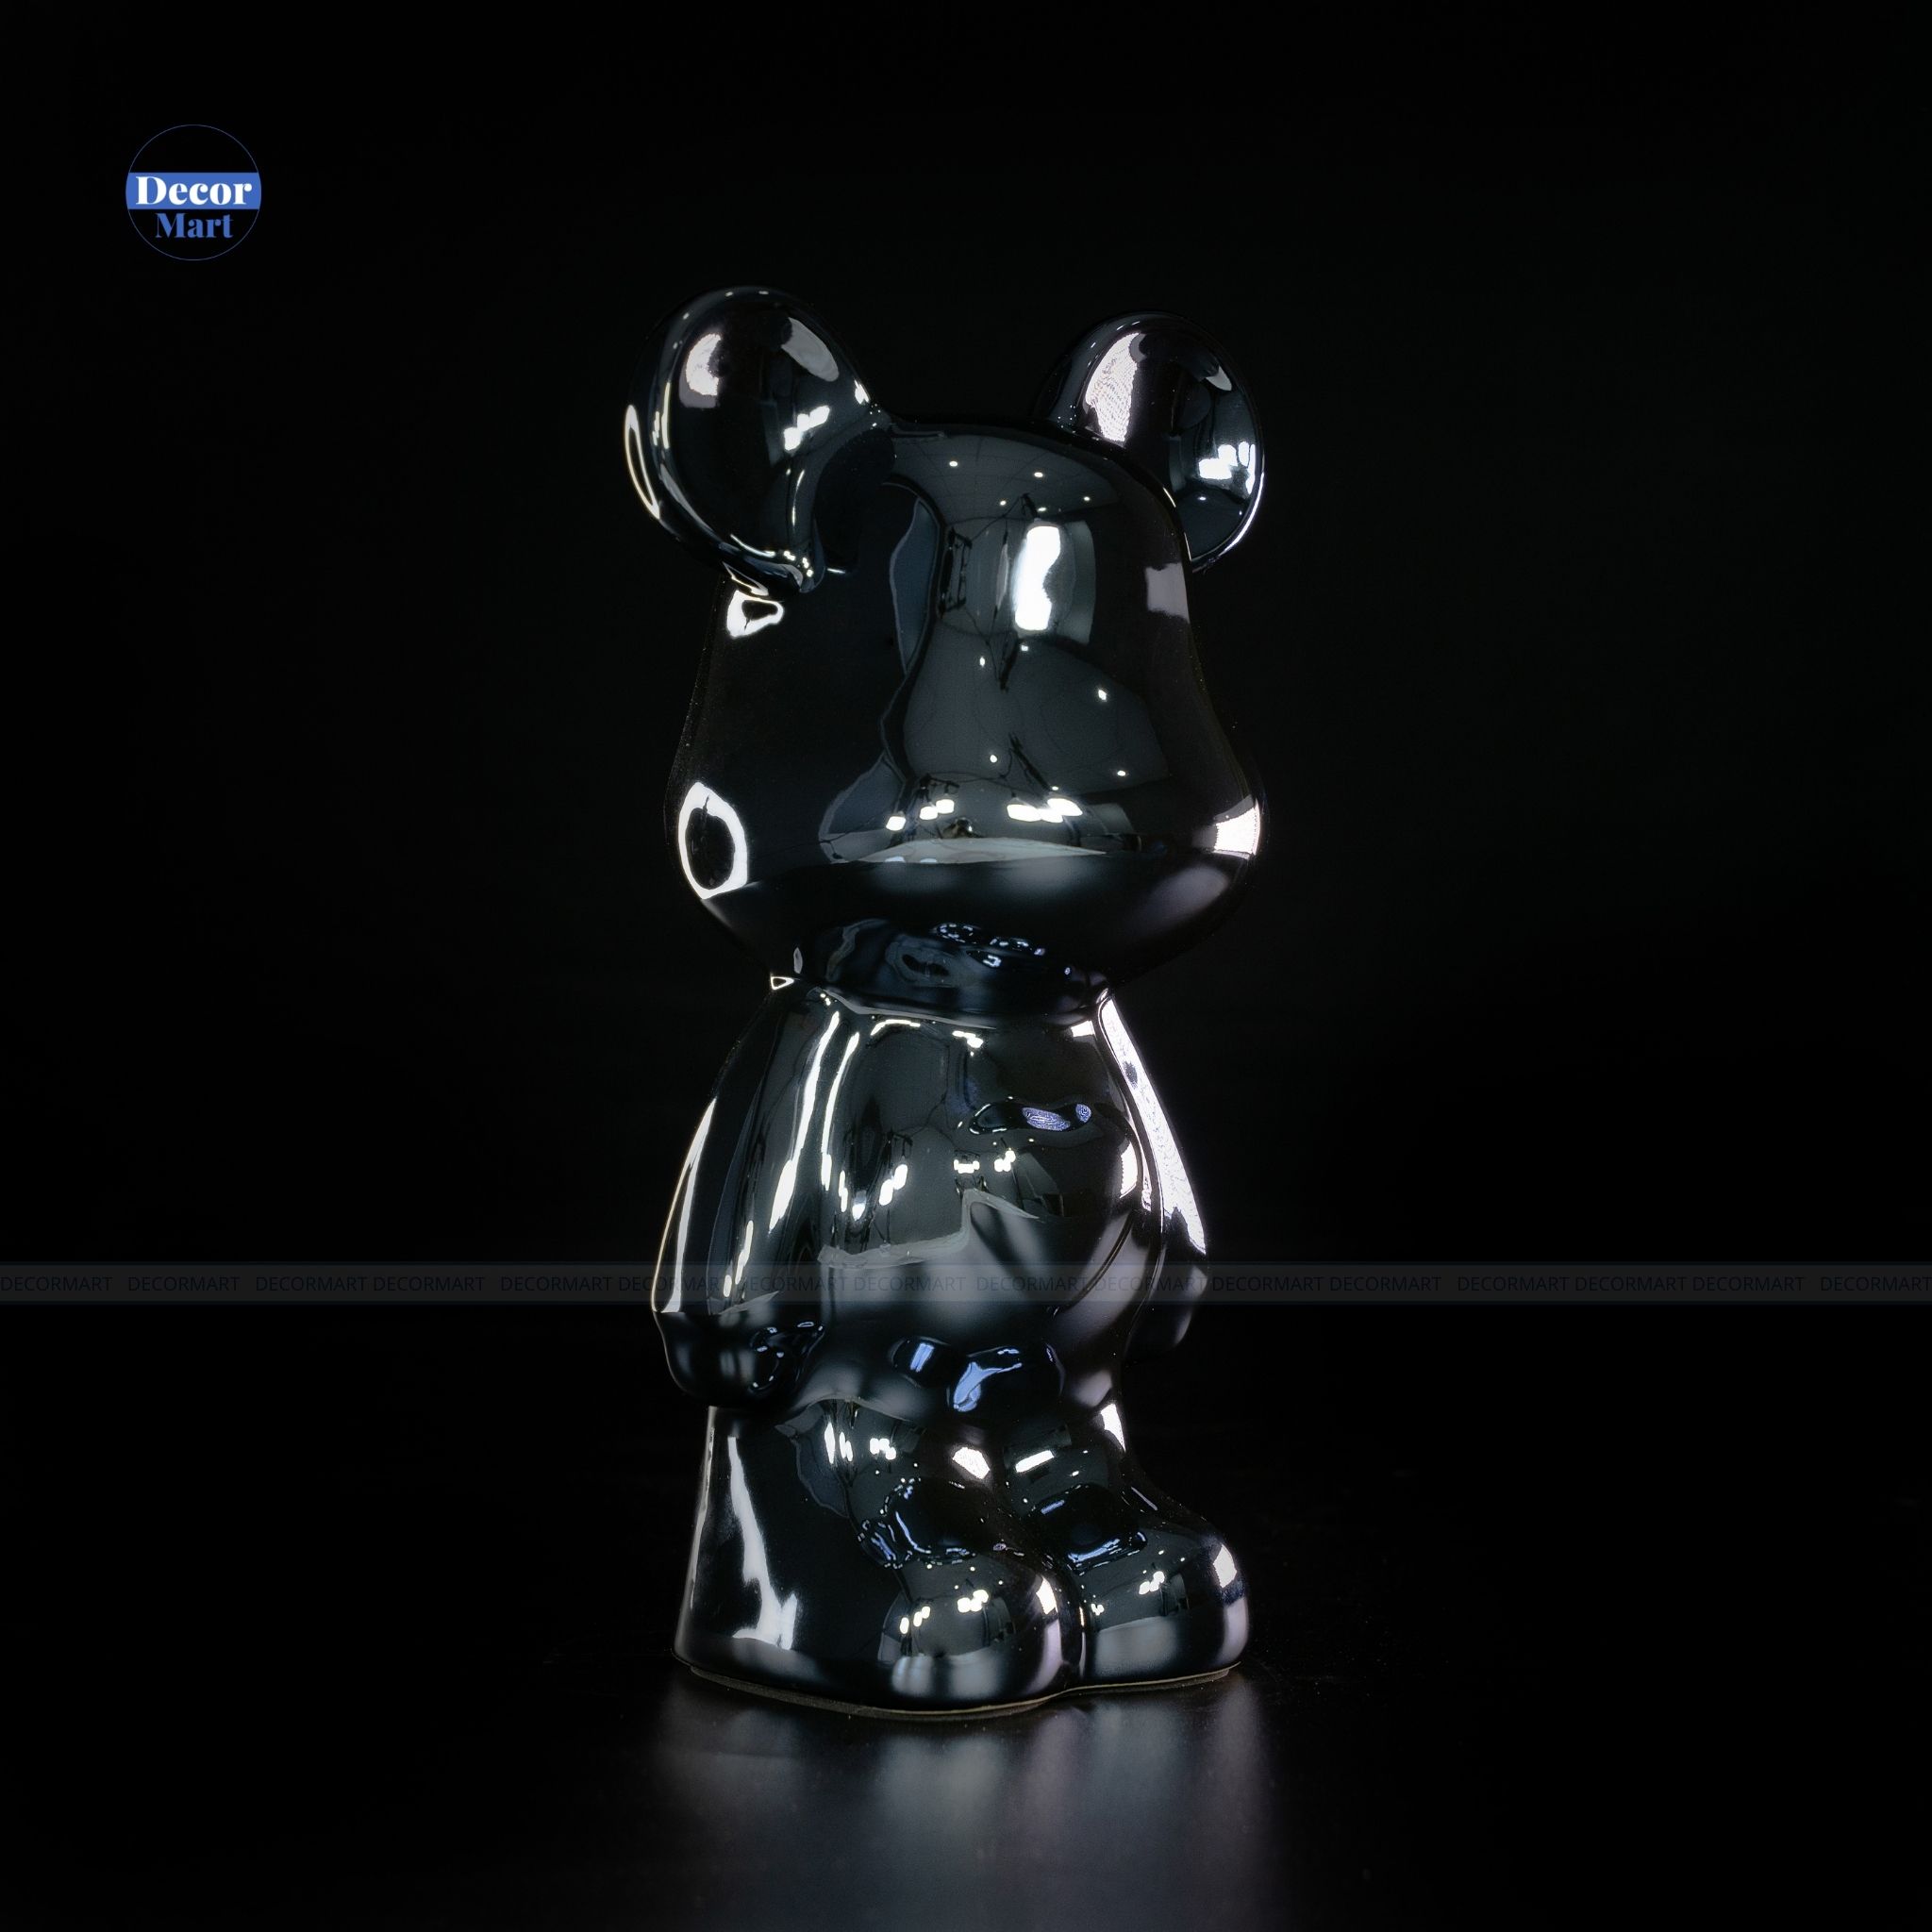 Móc khóa hình Gấu Bearbrick Robot có dây đeo Cute MK558